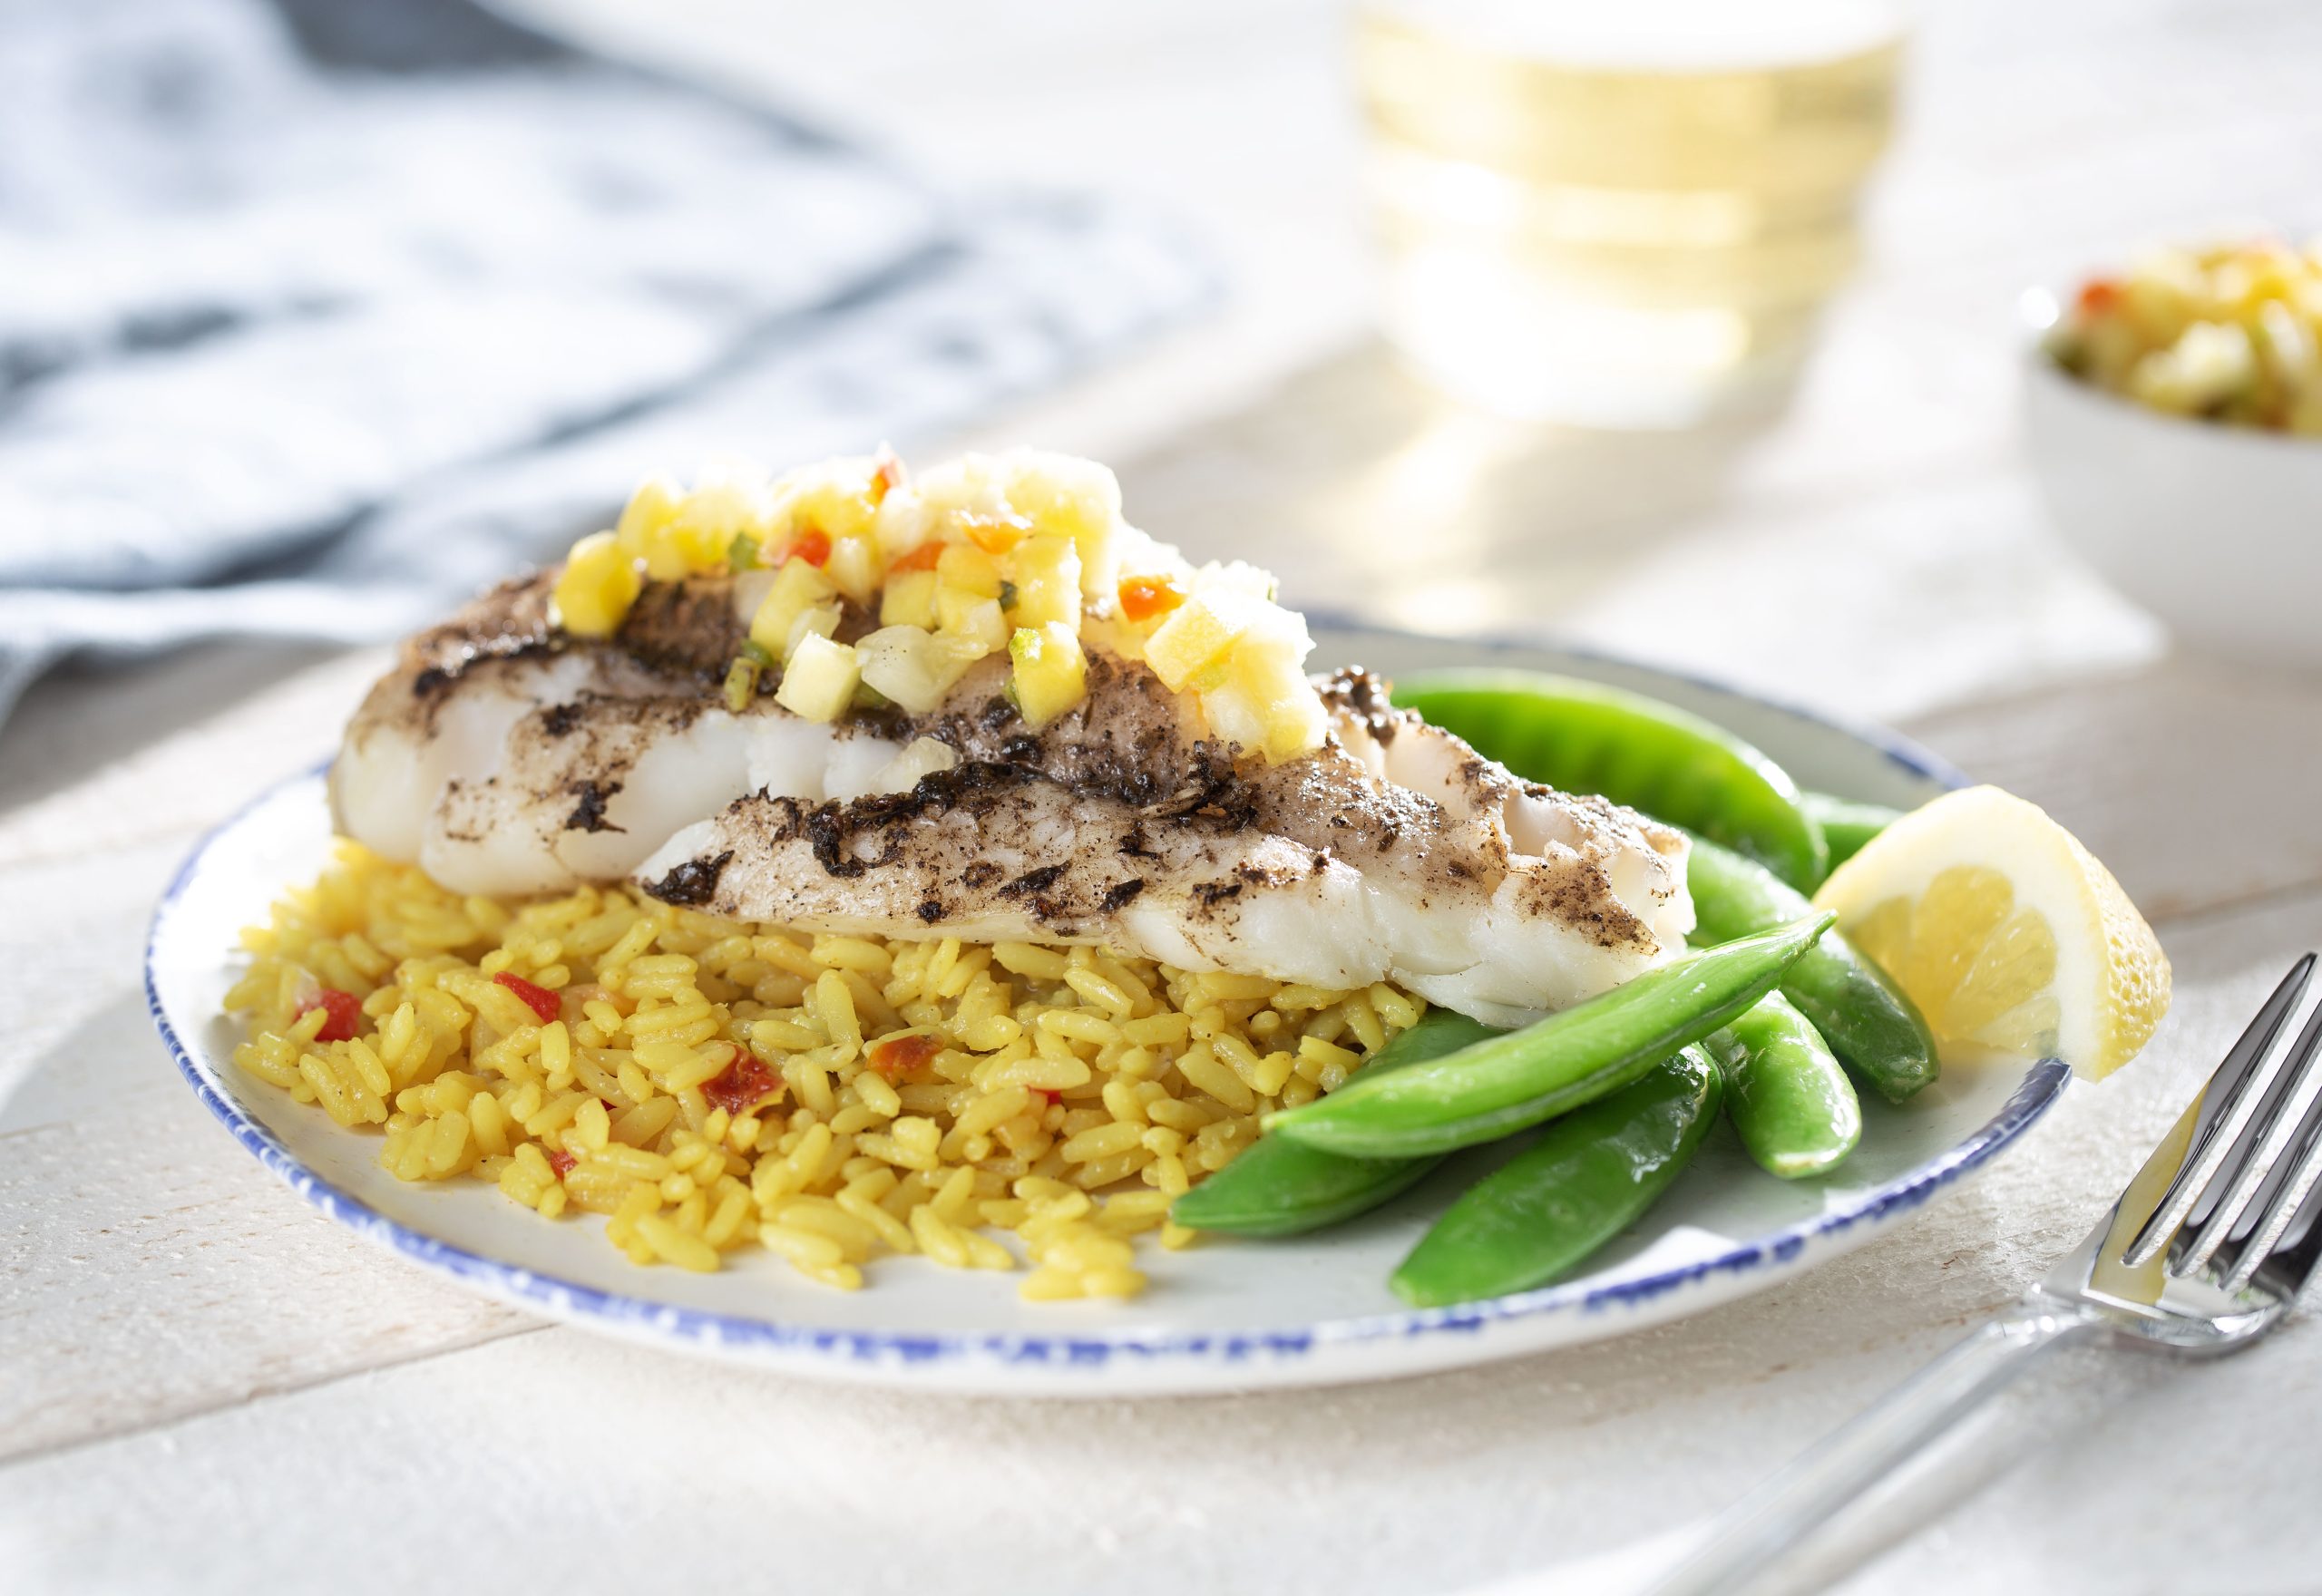 What’s For Dinner? Caribbean Cod & Pineapple Salsa